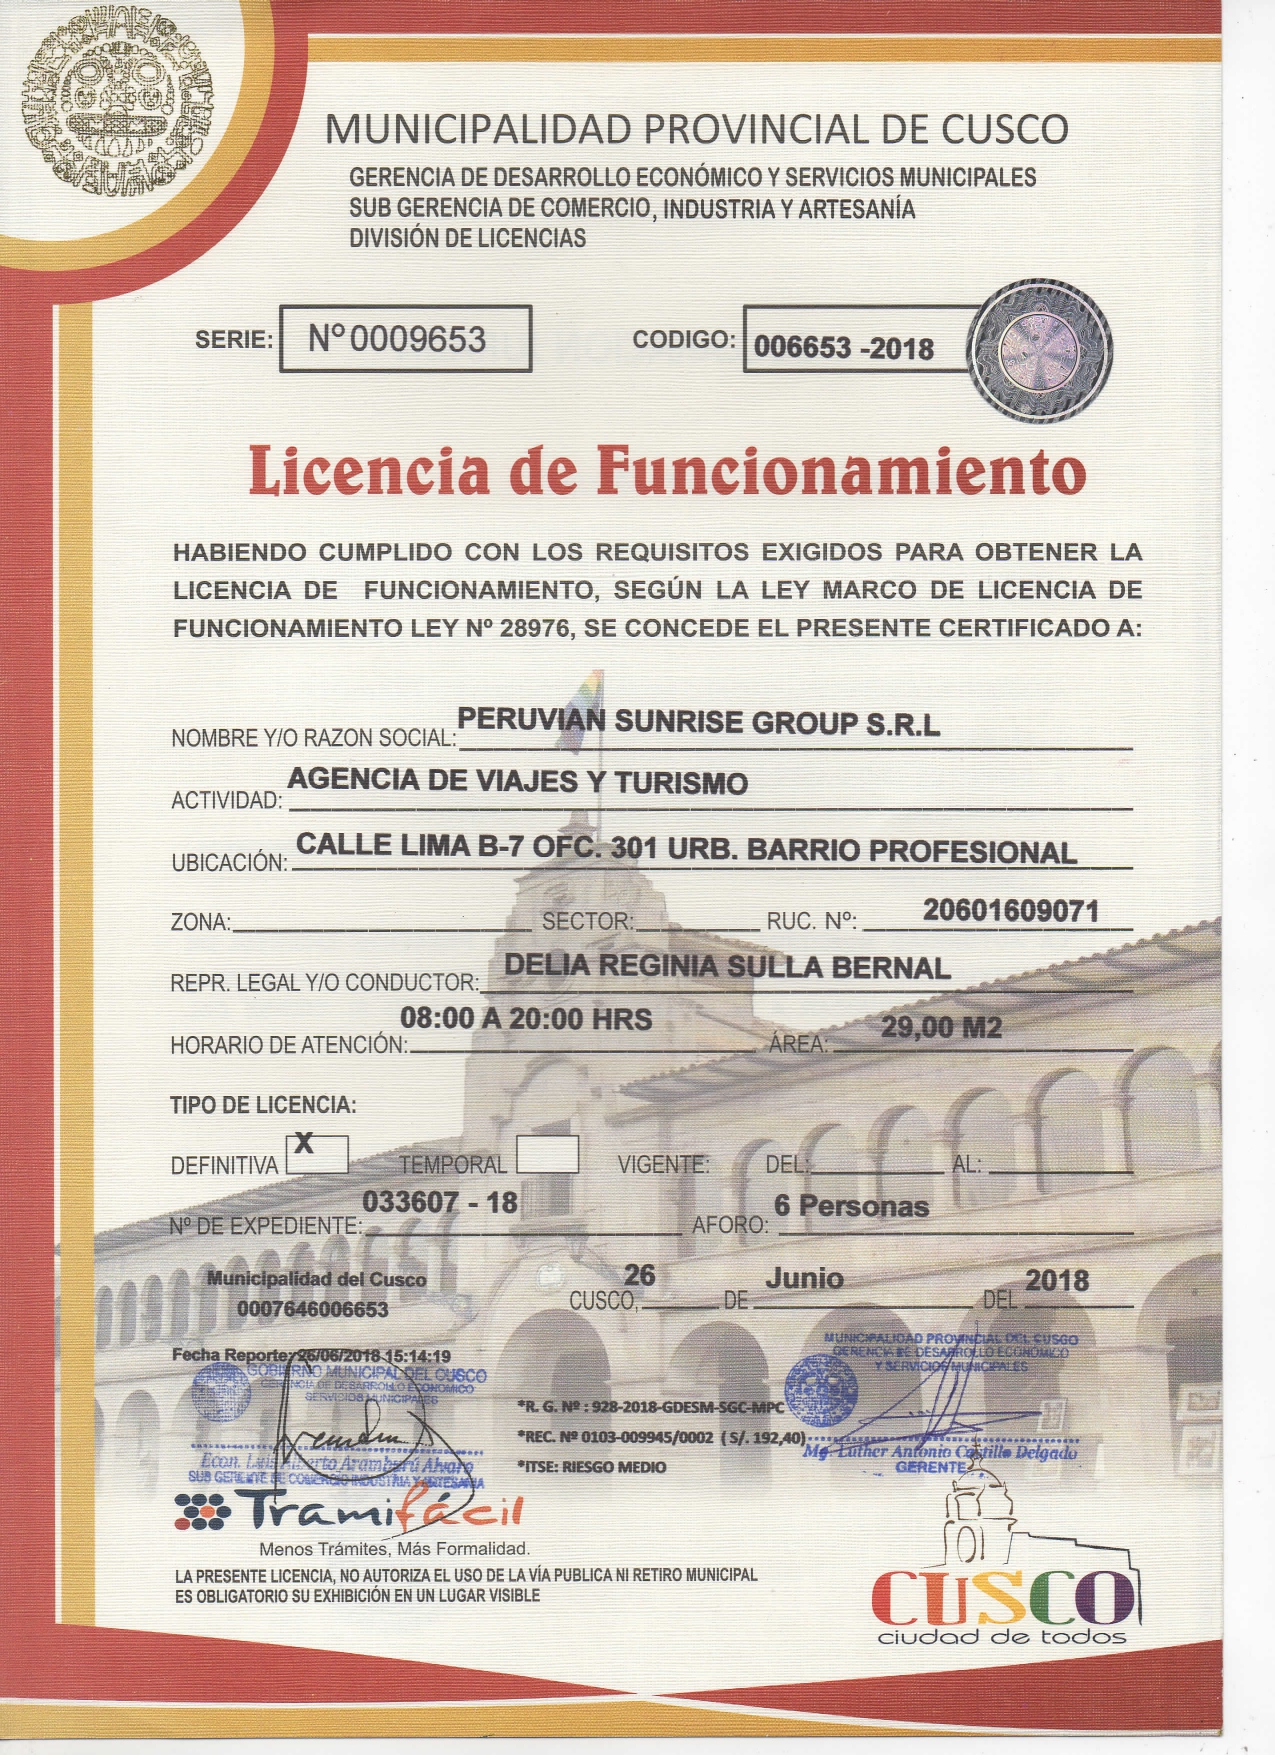 Licencia de Funcionamiento Peru Travel Agency | Peruvian Sunrise